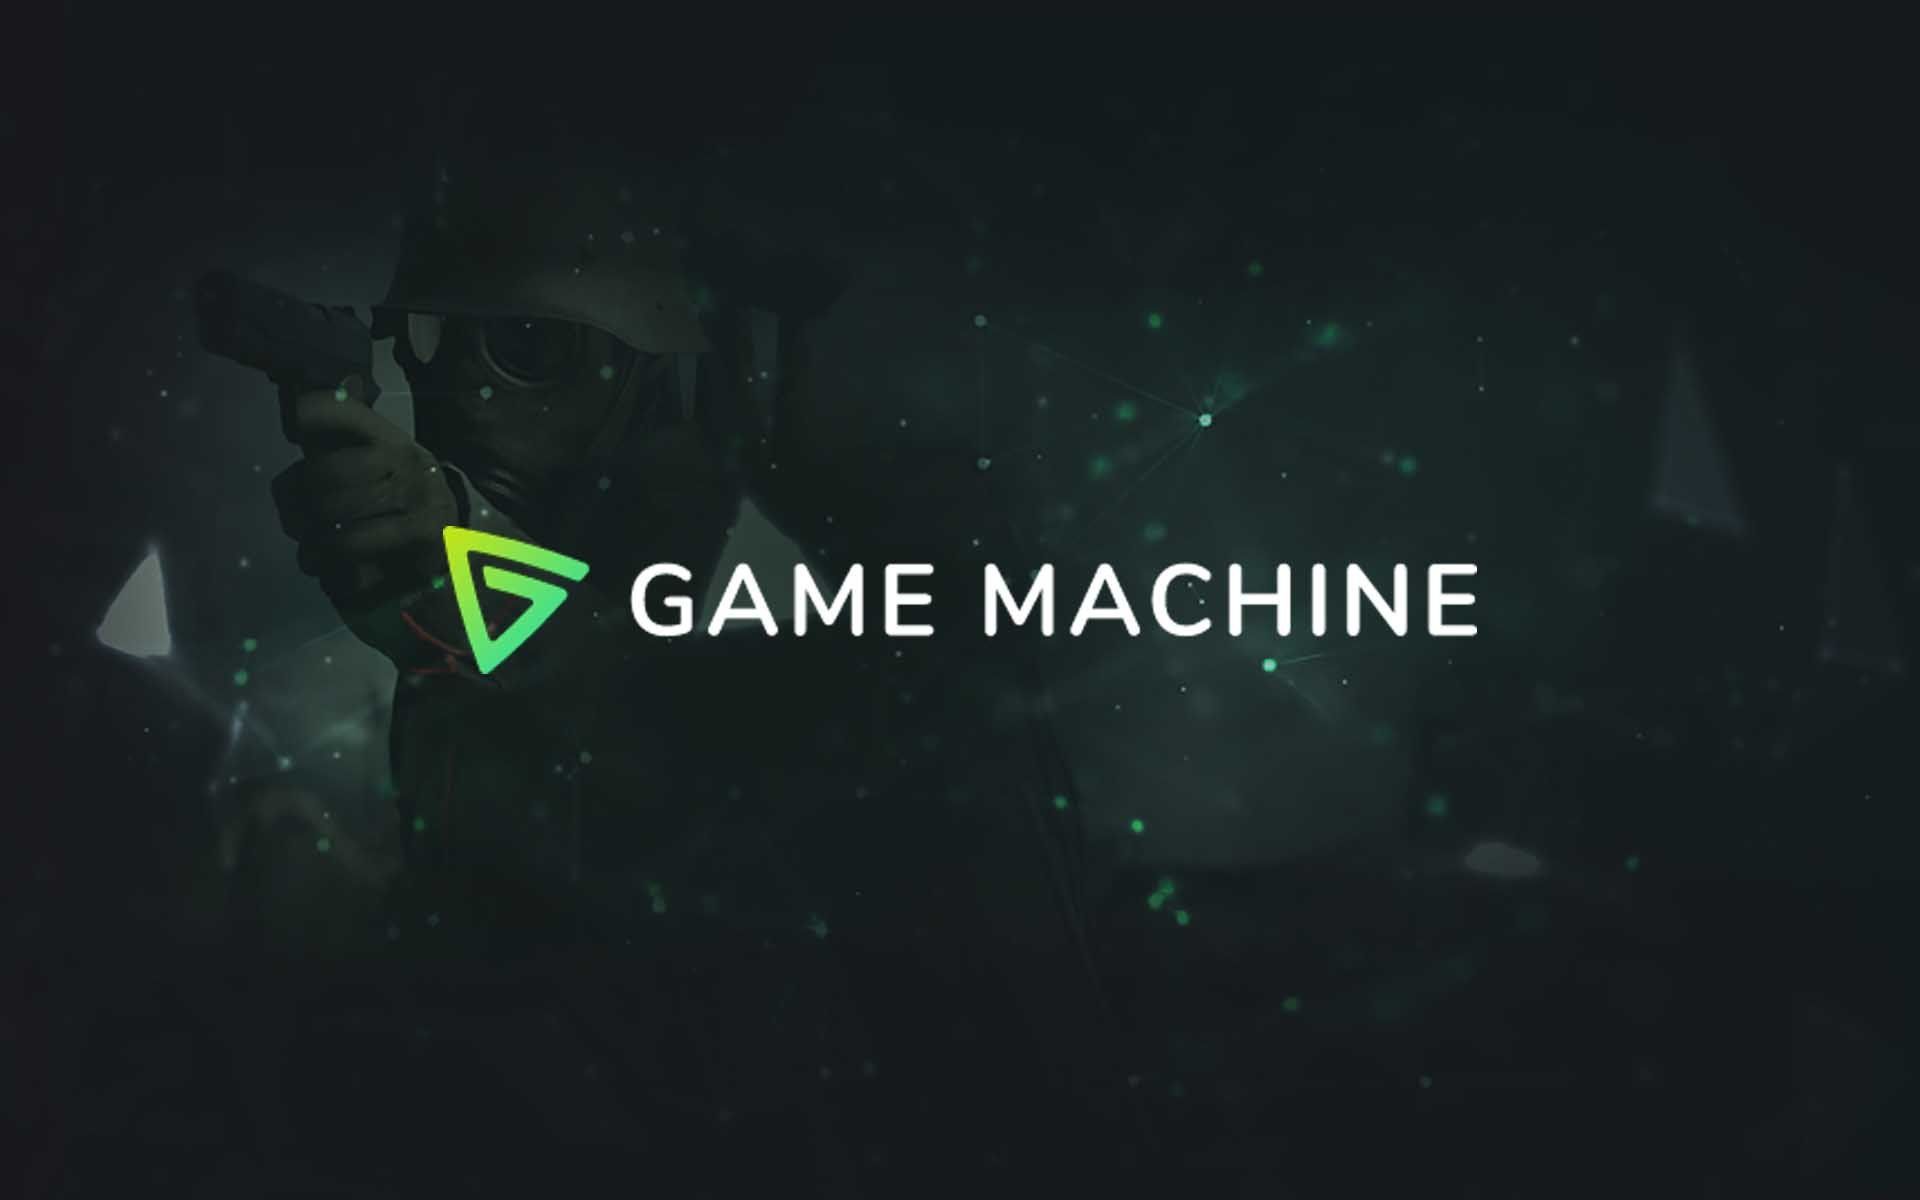 Game Machine